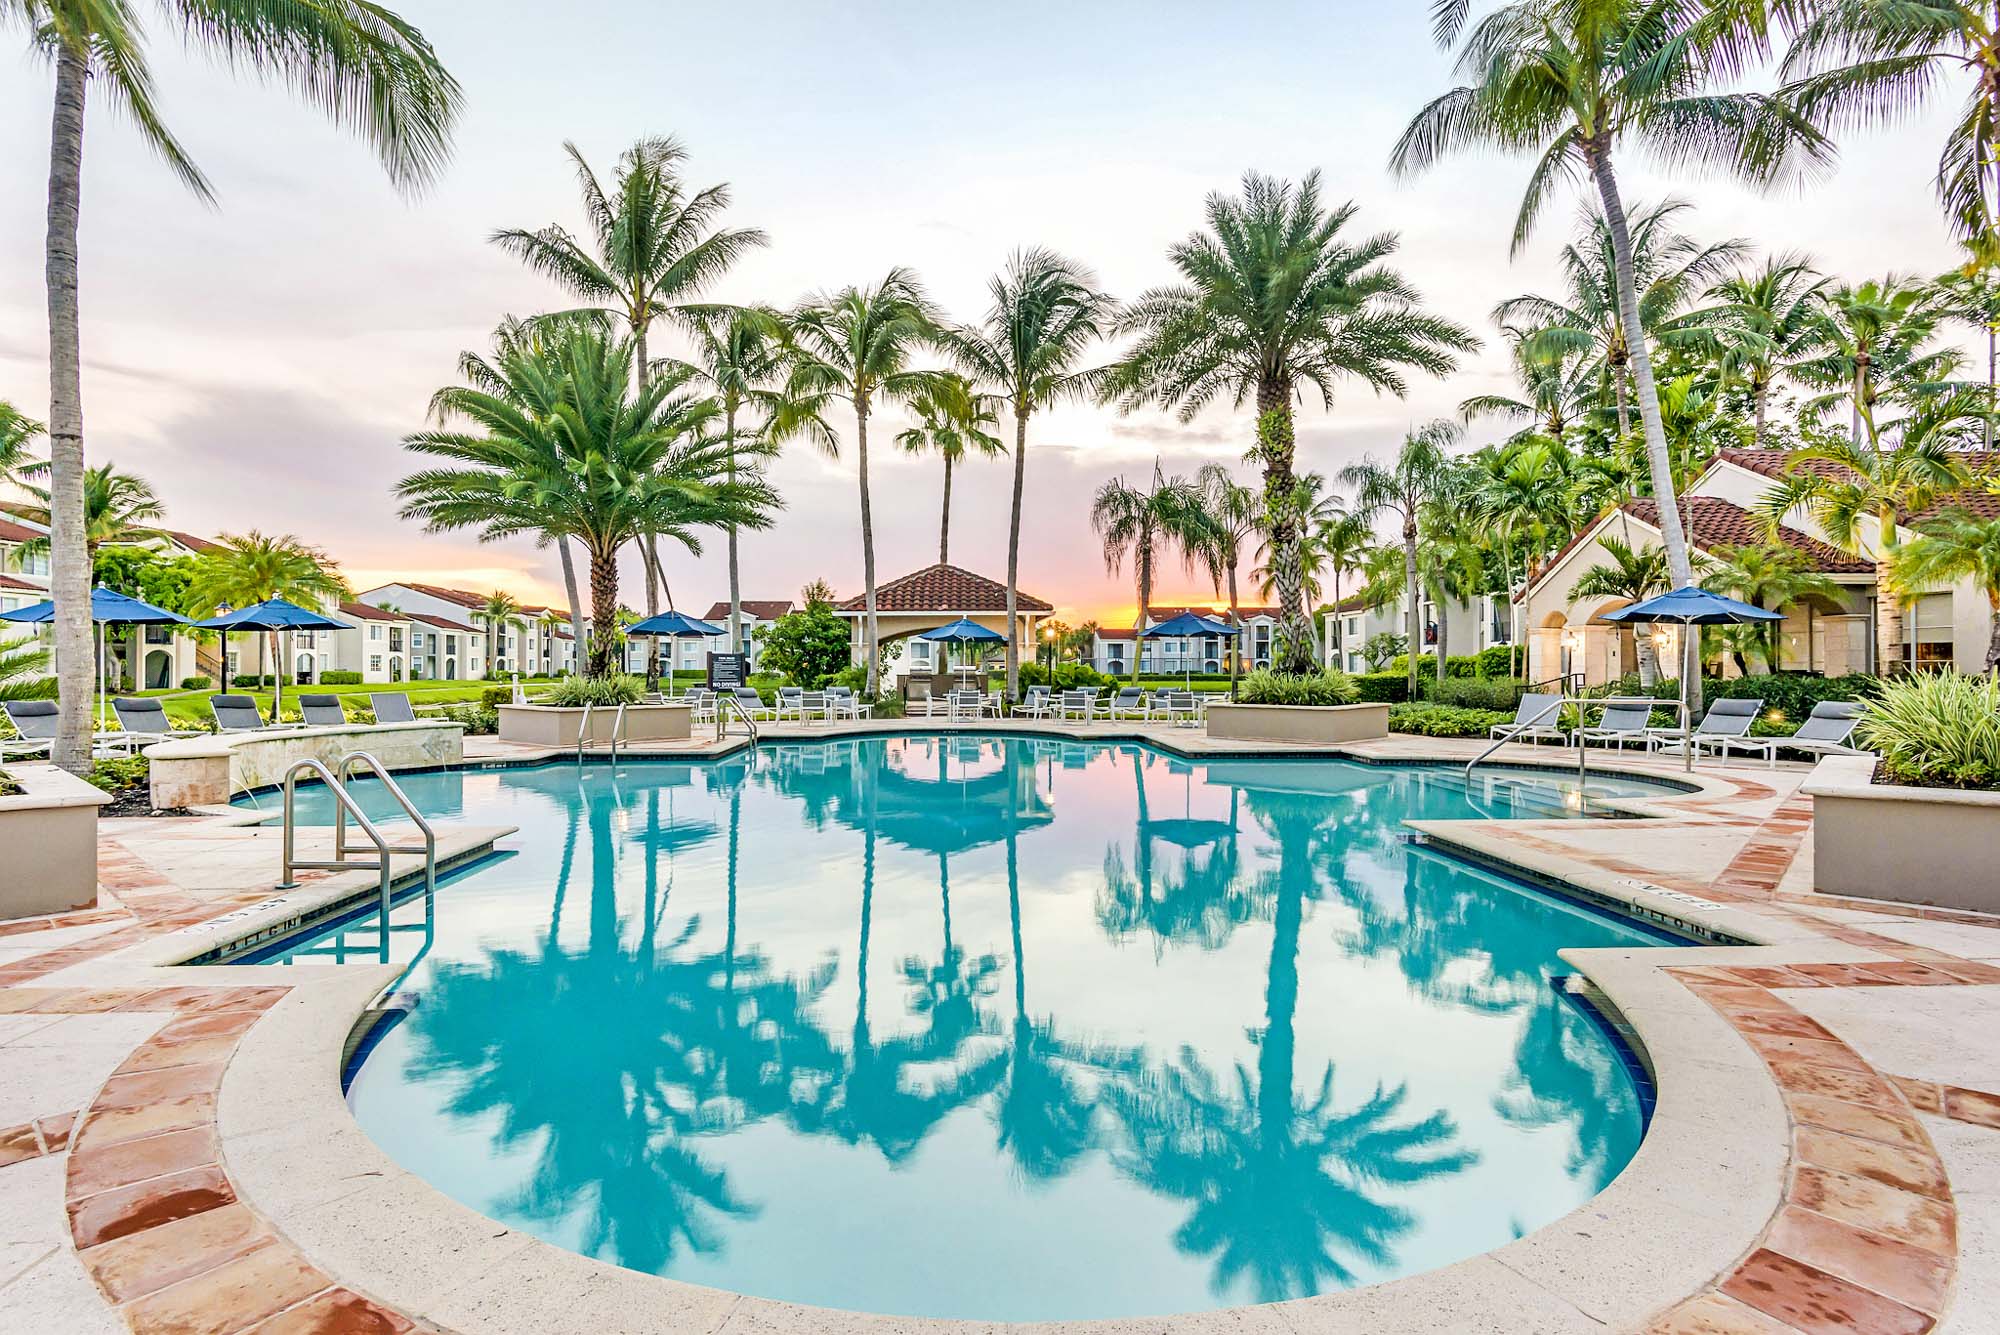 The pool at Miramar Lake in Fort Lauderdale, FL.